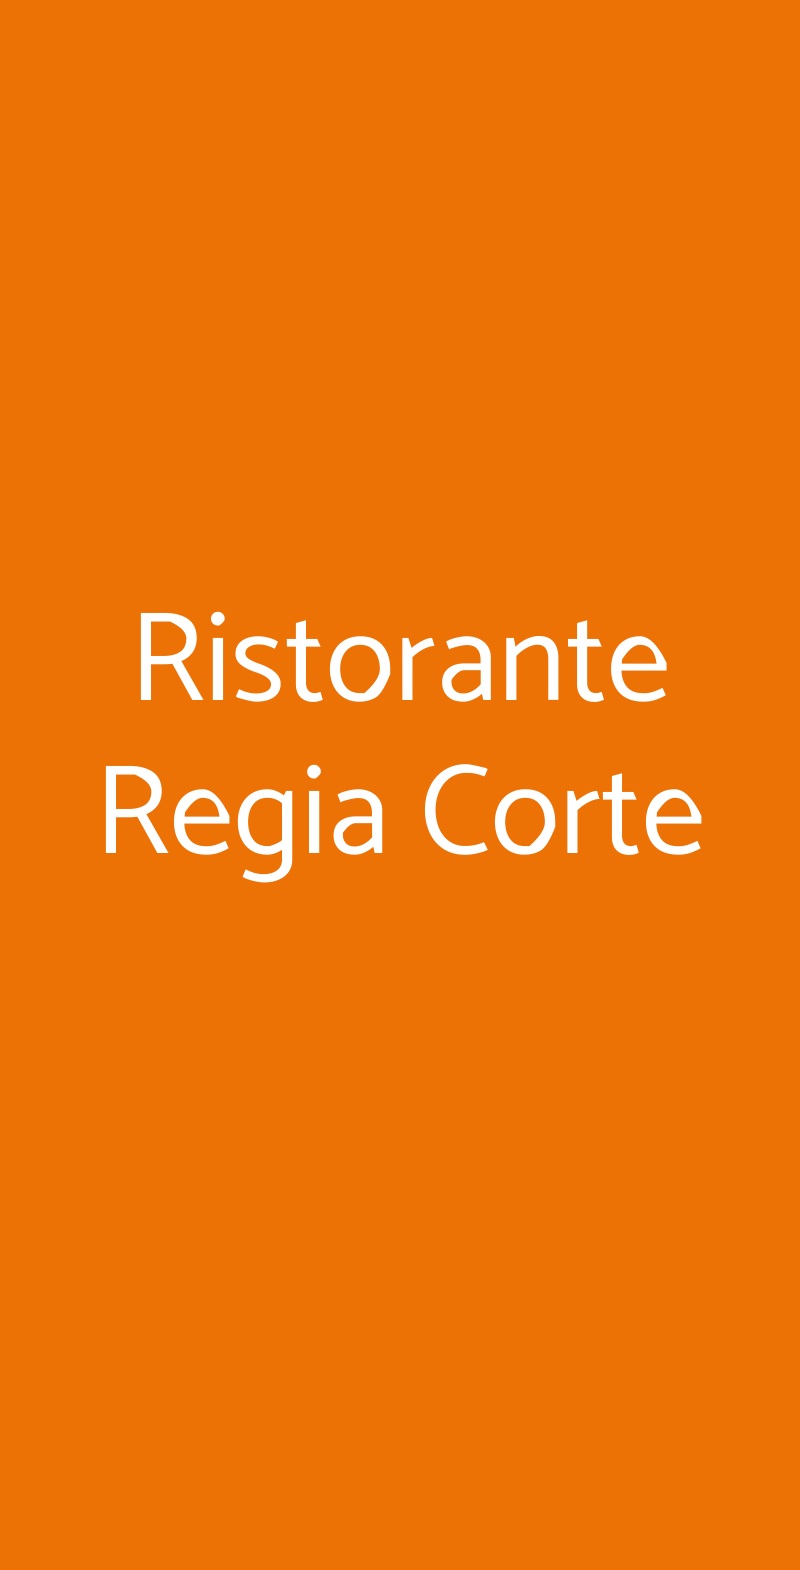 Ristorante Regia Corte Matera menù 1 pagina